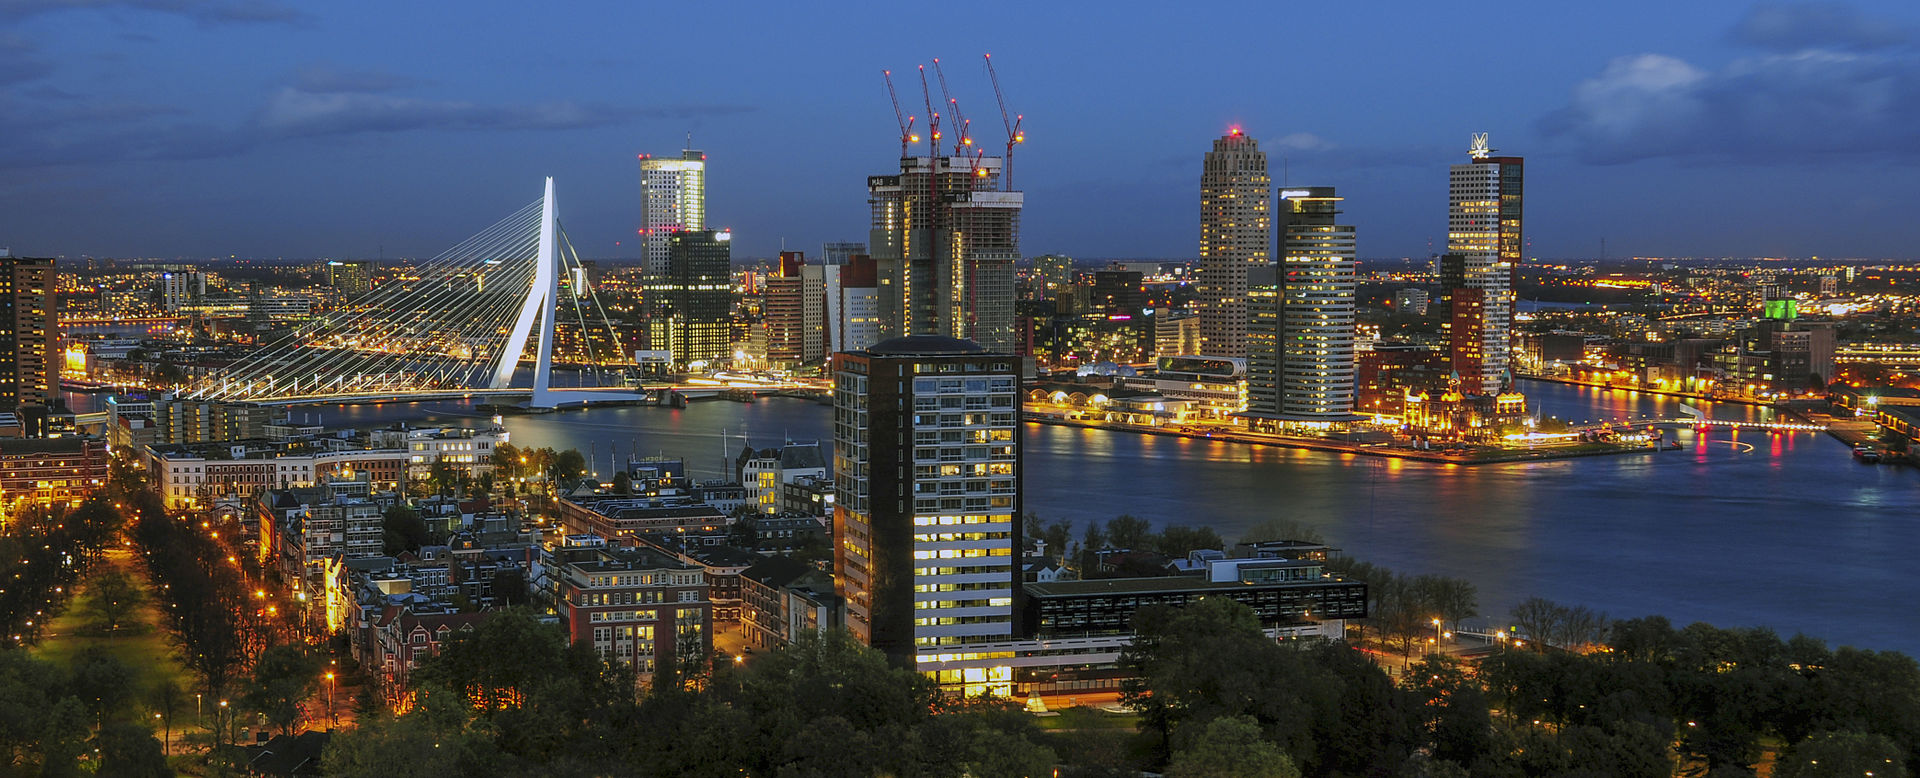 Rotterdam background image